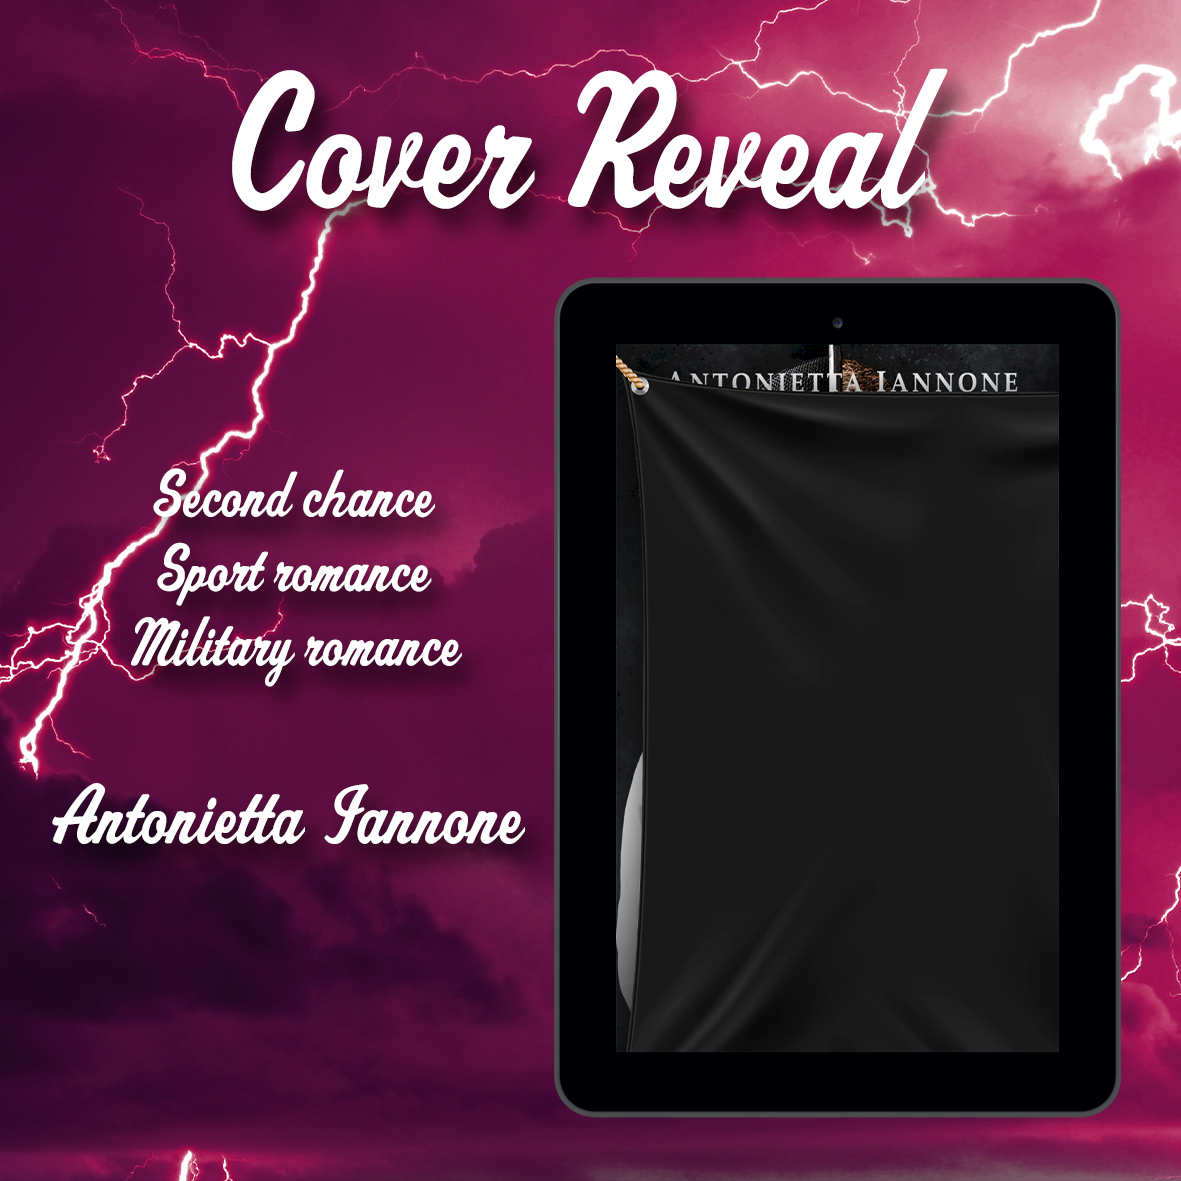 Cover reveal “My storm – Può l’amore sconfiggere il tempo?” di Antonietta Iannone